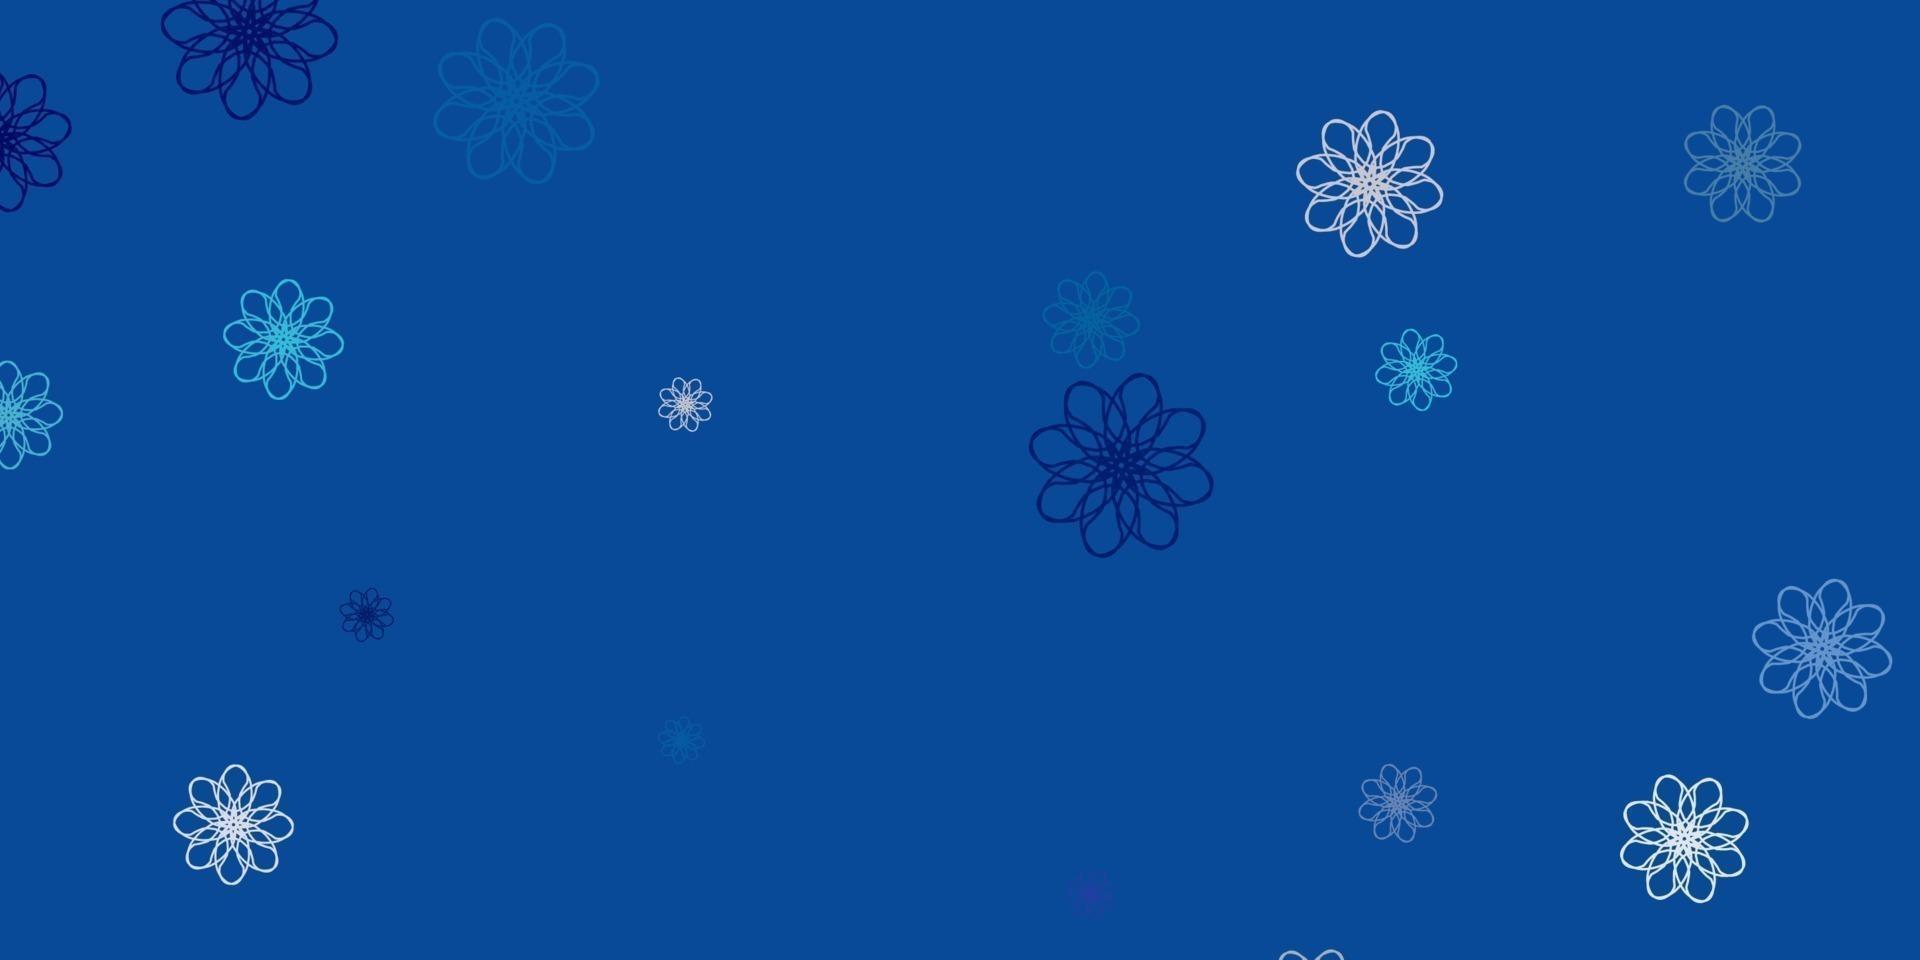 motif de doodle vecteur bleu clair avec des fleurs.